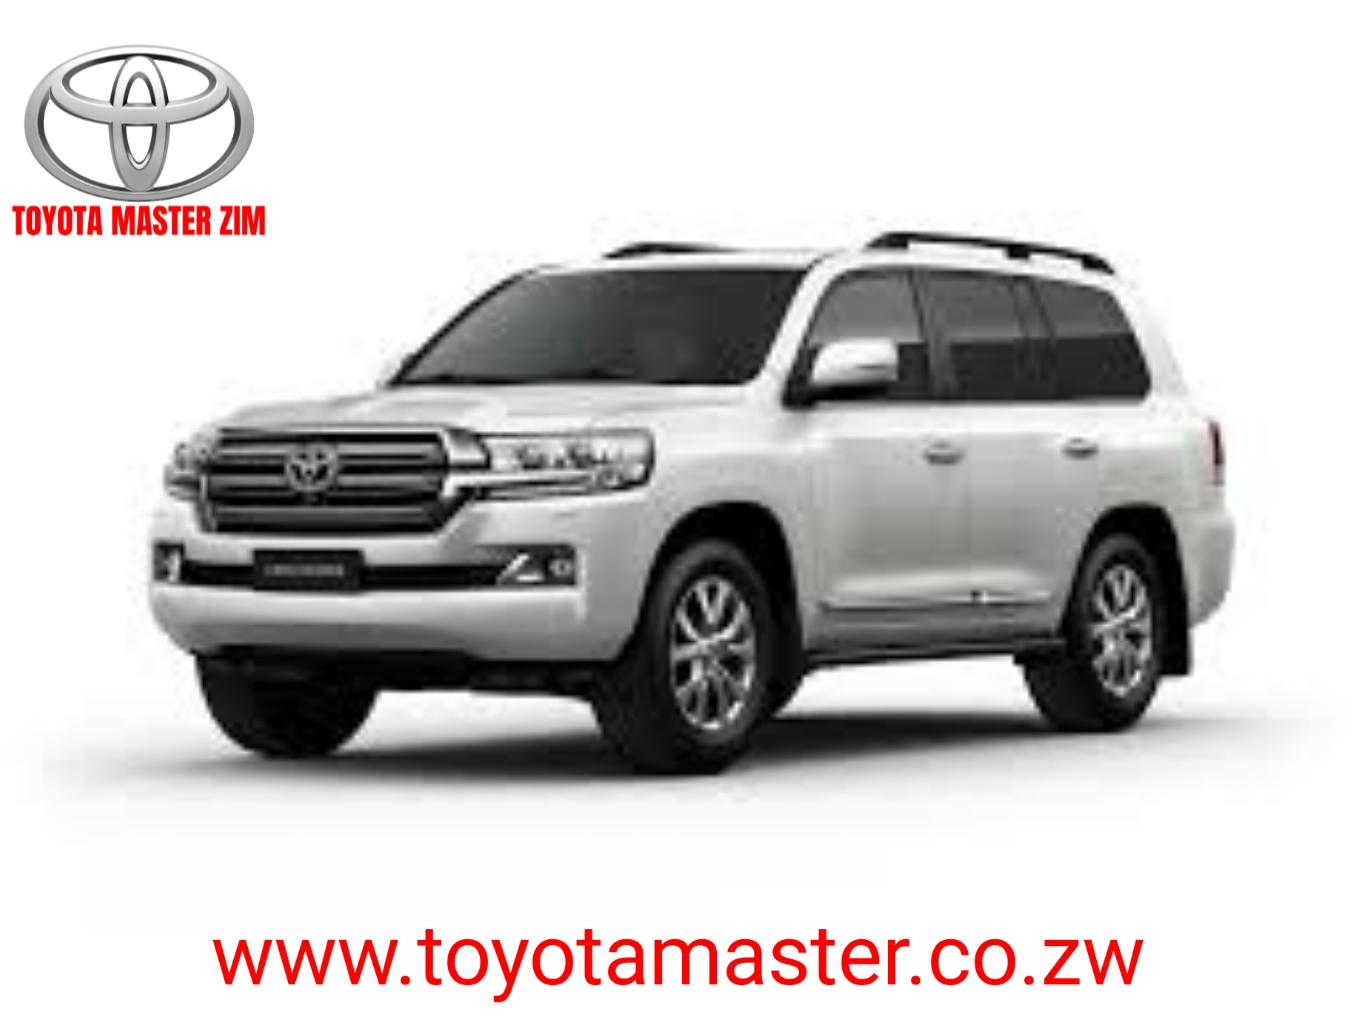 Toyota Master Zimbabwe Motoring Base Zimbabwe